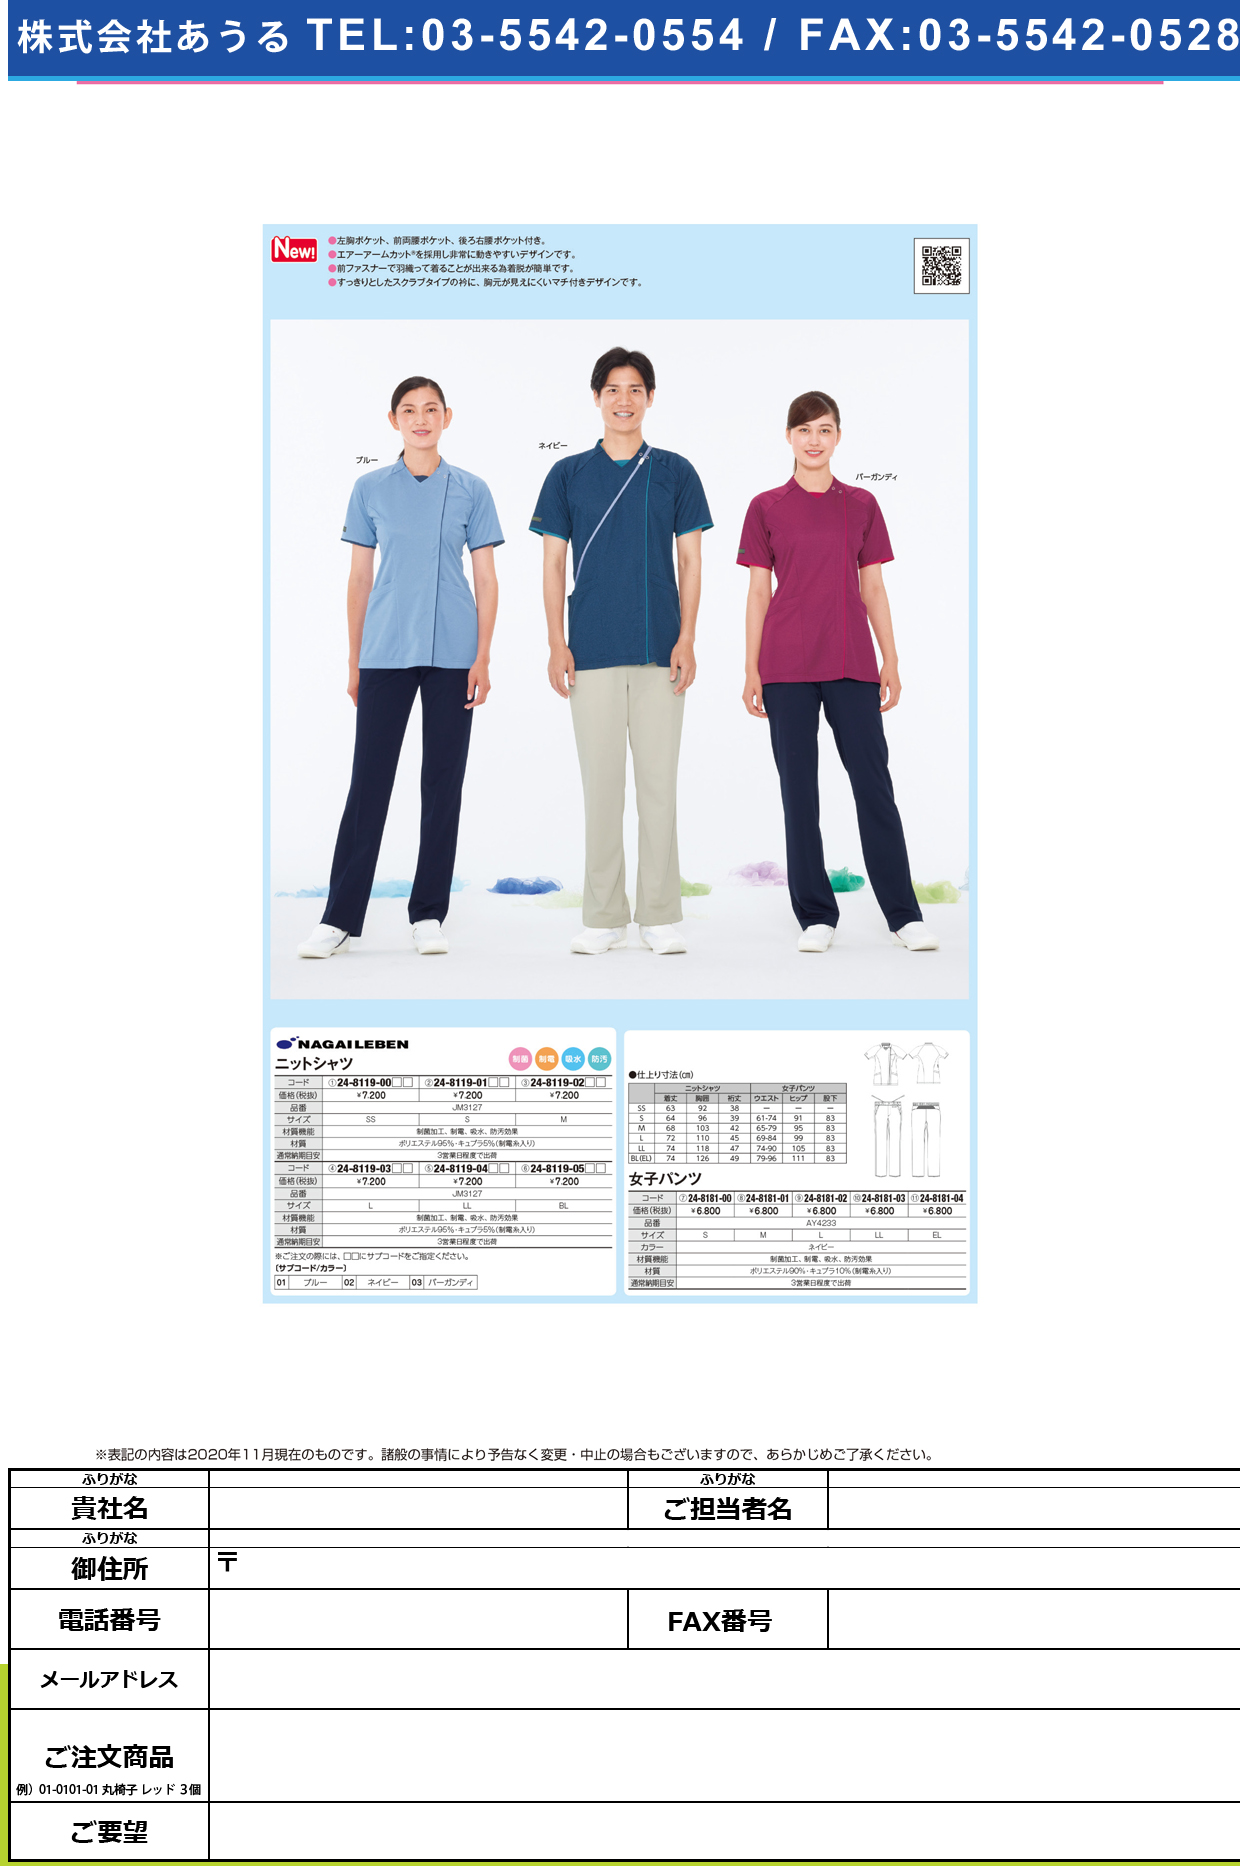 ニットシャツ JM-3127(S)JM-3127(S)ブルー(24-8119-01-01)【ナガイレーベン】(販売単位:1)